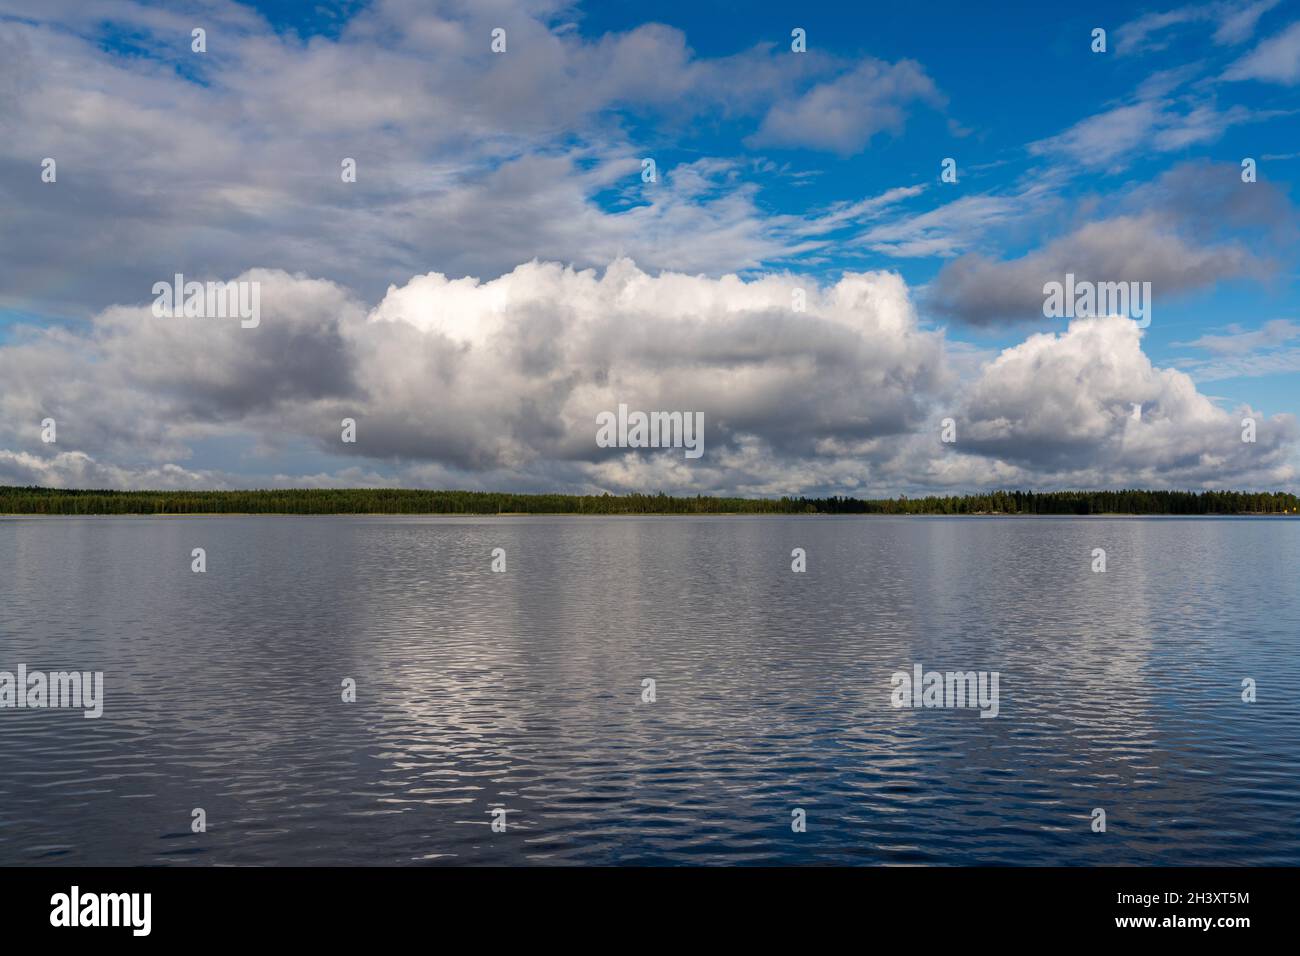 Eine ruhige und friedliche Seenlandschaft in der Wildnis mit Wald am fernen Ufer unter einem ausdrucksstarken blauen Himmel mit weißem c Stockfoto